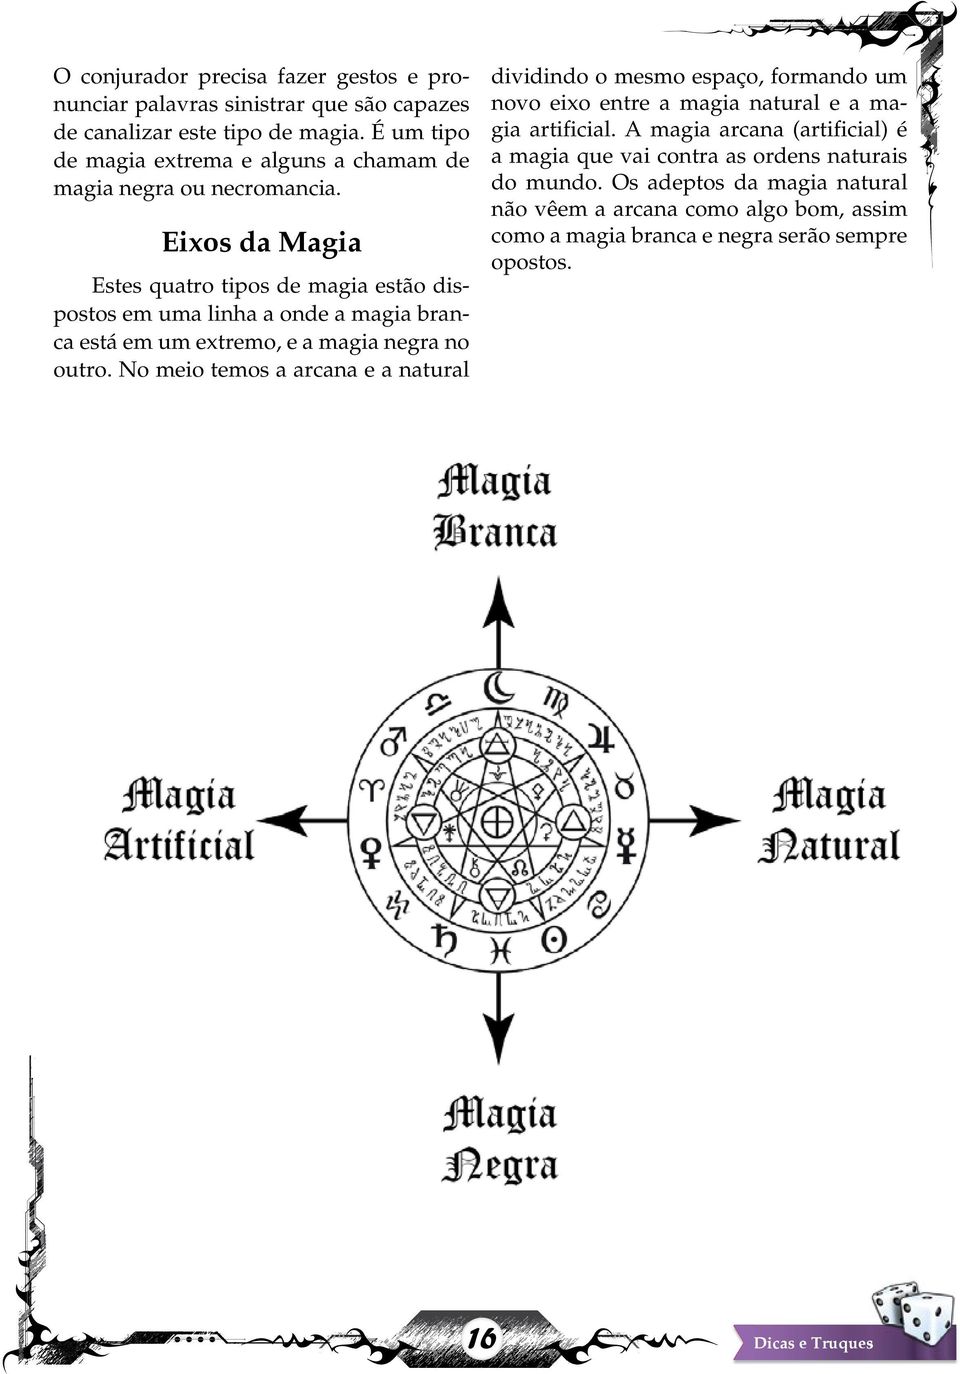 Eixos da Magia Estes quatro tipos de magia estão dispostos em uma linha a onde a magia branca está em um extremo, e a magia negra no outro.